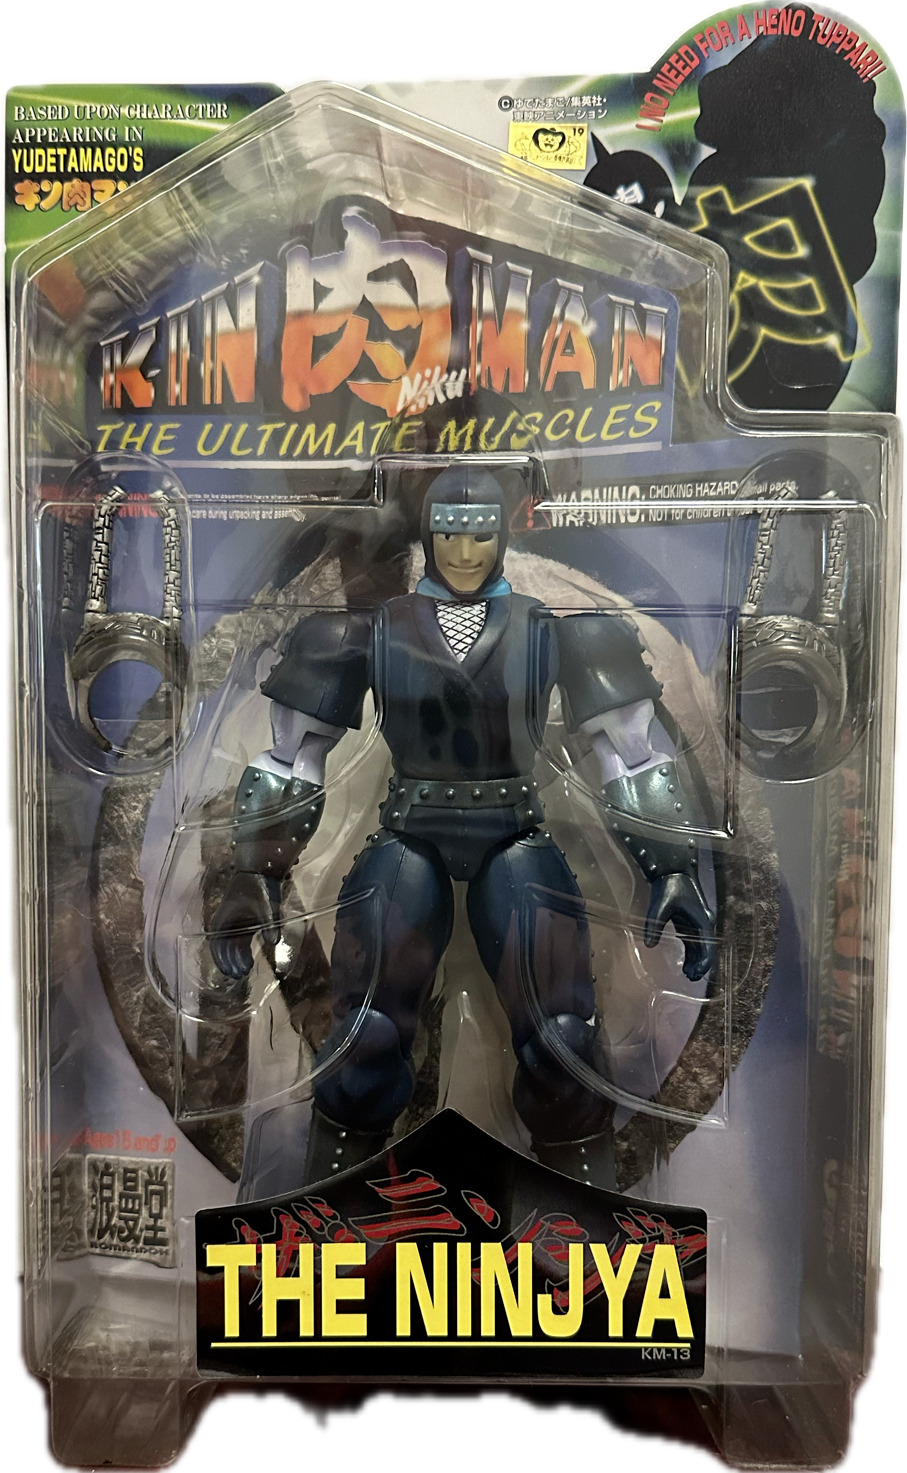 Ninjya KM-13 Action Figure - The Ultimate Muscles - Based Upon Yudetamago